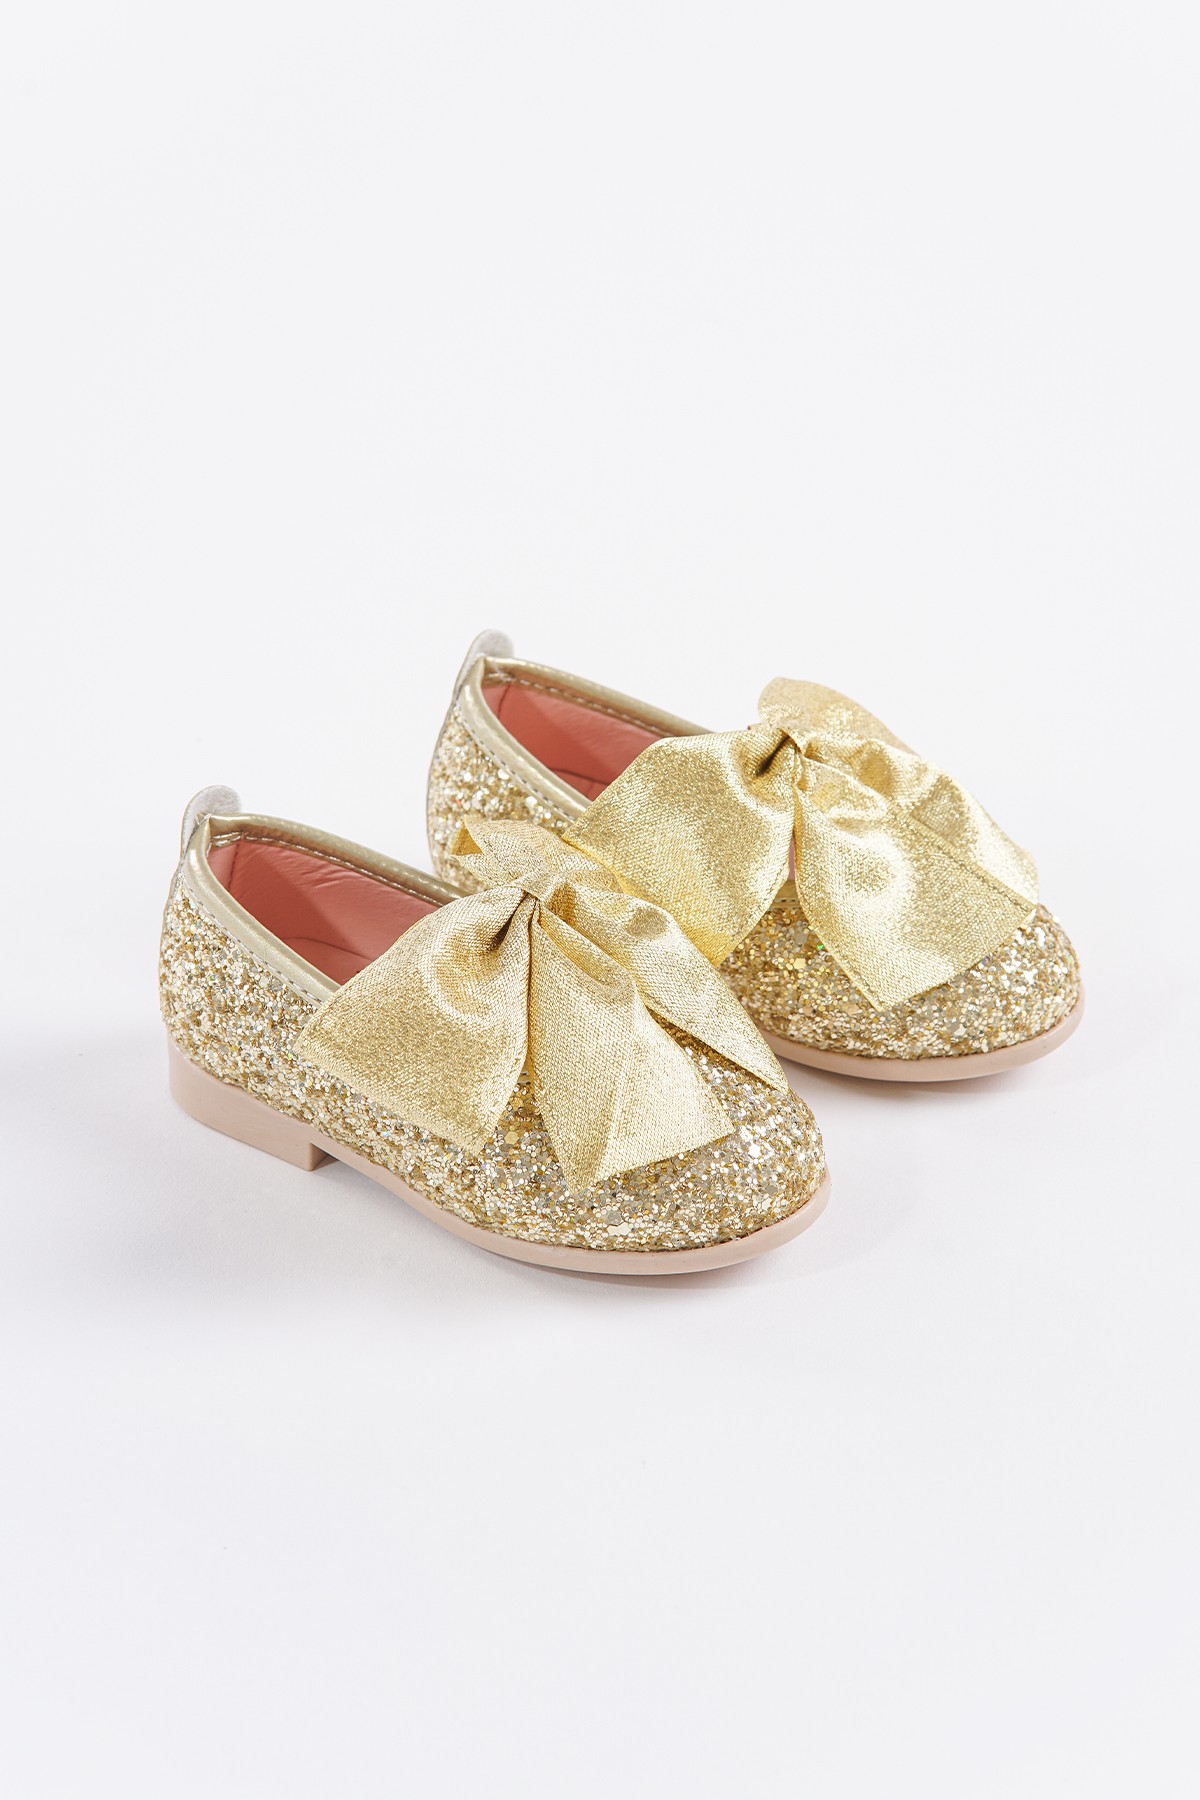 SHUU Fiyonklu Cam Kırığı Taş Kaplama Kız Çocuk Ayakkabı - Altın